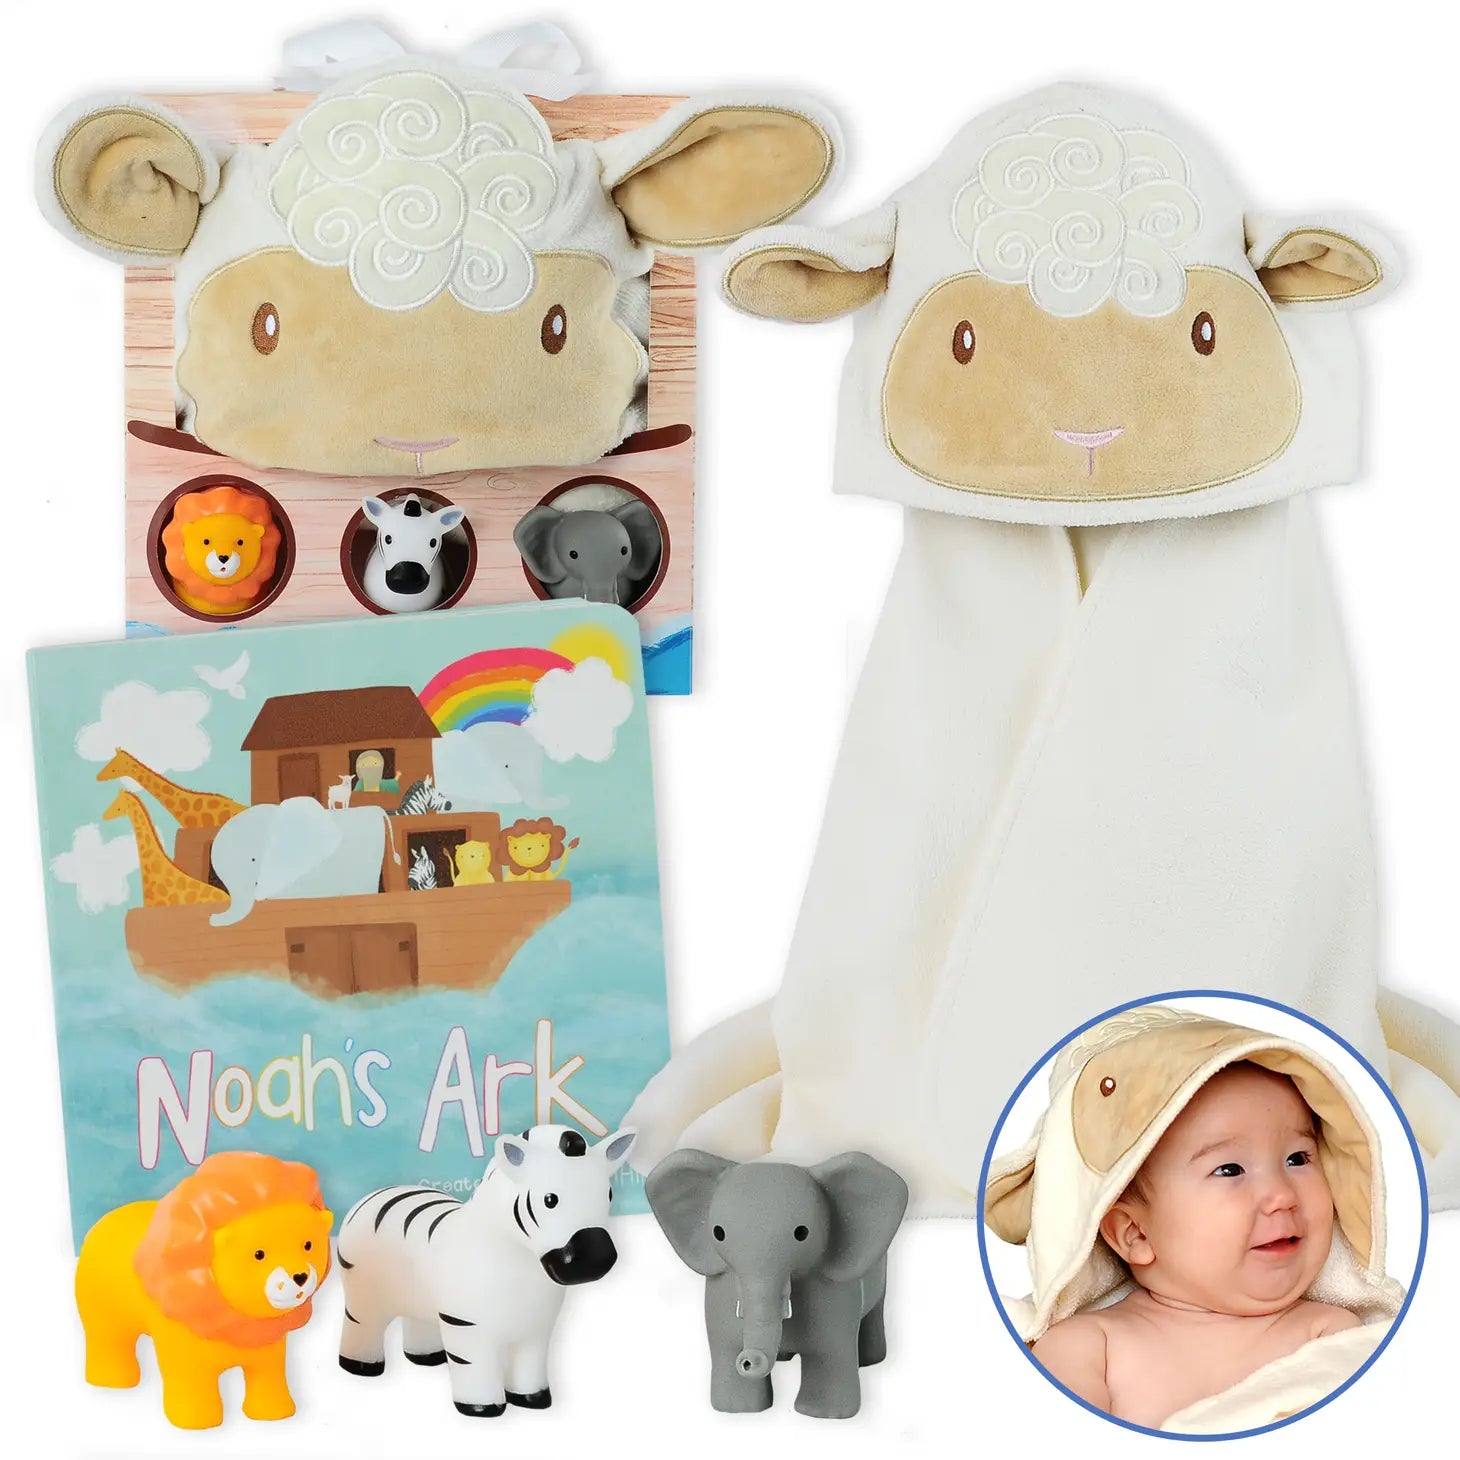 Noah's Ark 5 Piece Baby Gift Set